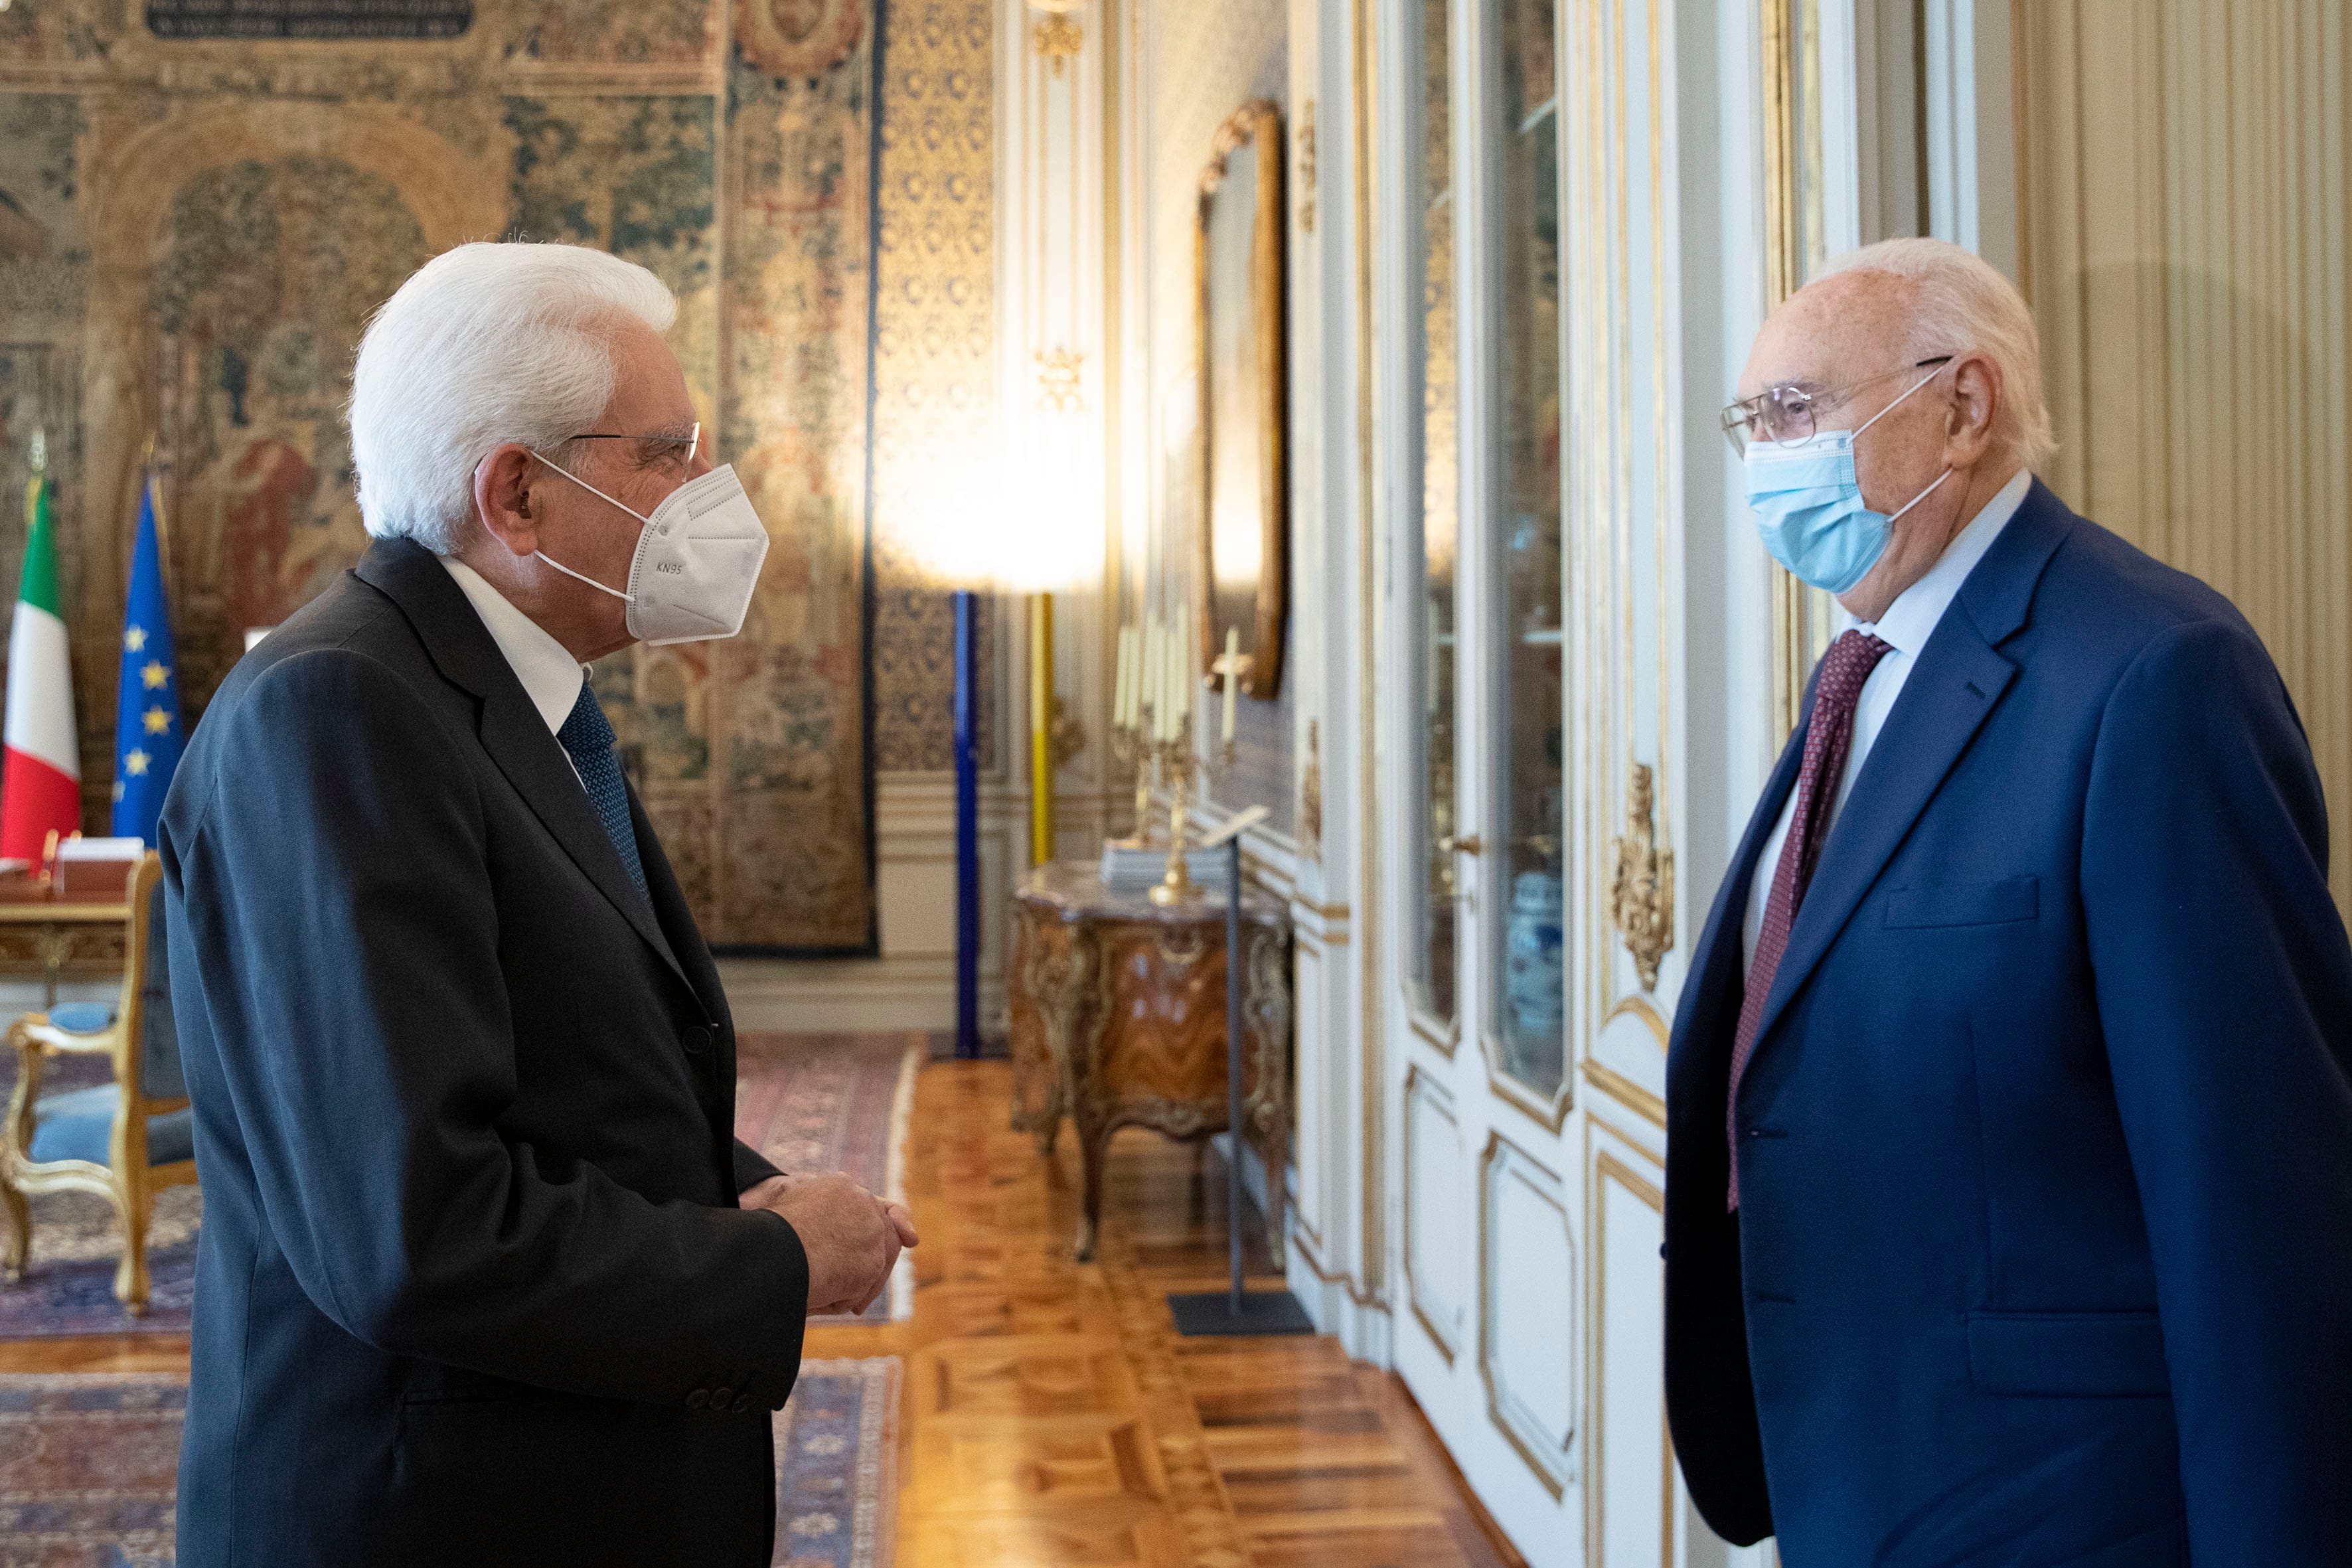 Il Presidente della Repubblica, Sergio Mattarella, ha ricevuto nel pomeriggio al Quirinale, Pippo Baudo al quale ha consegnato l'onorificenza di Cavaliere di Gran Croce dell'Ordine al Merito della Repubblica Italiana.